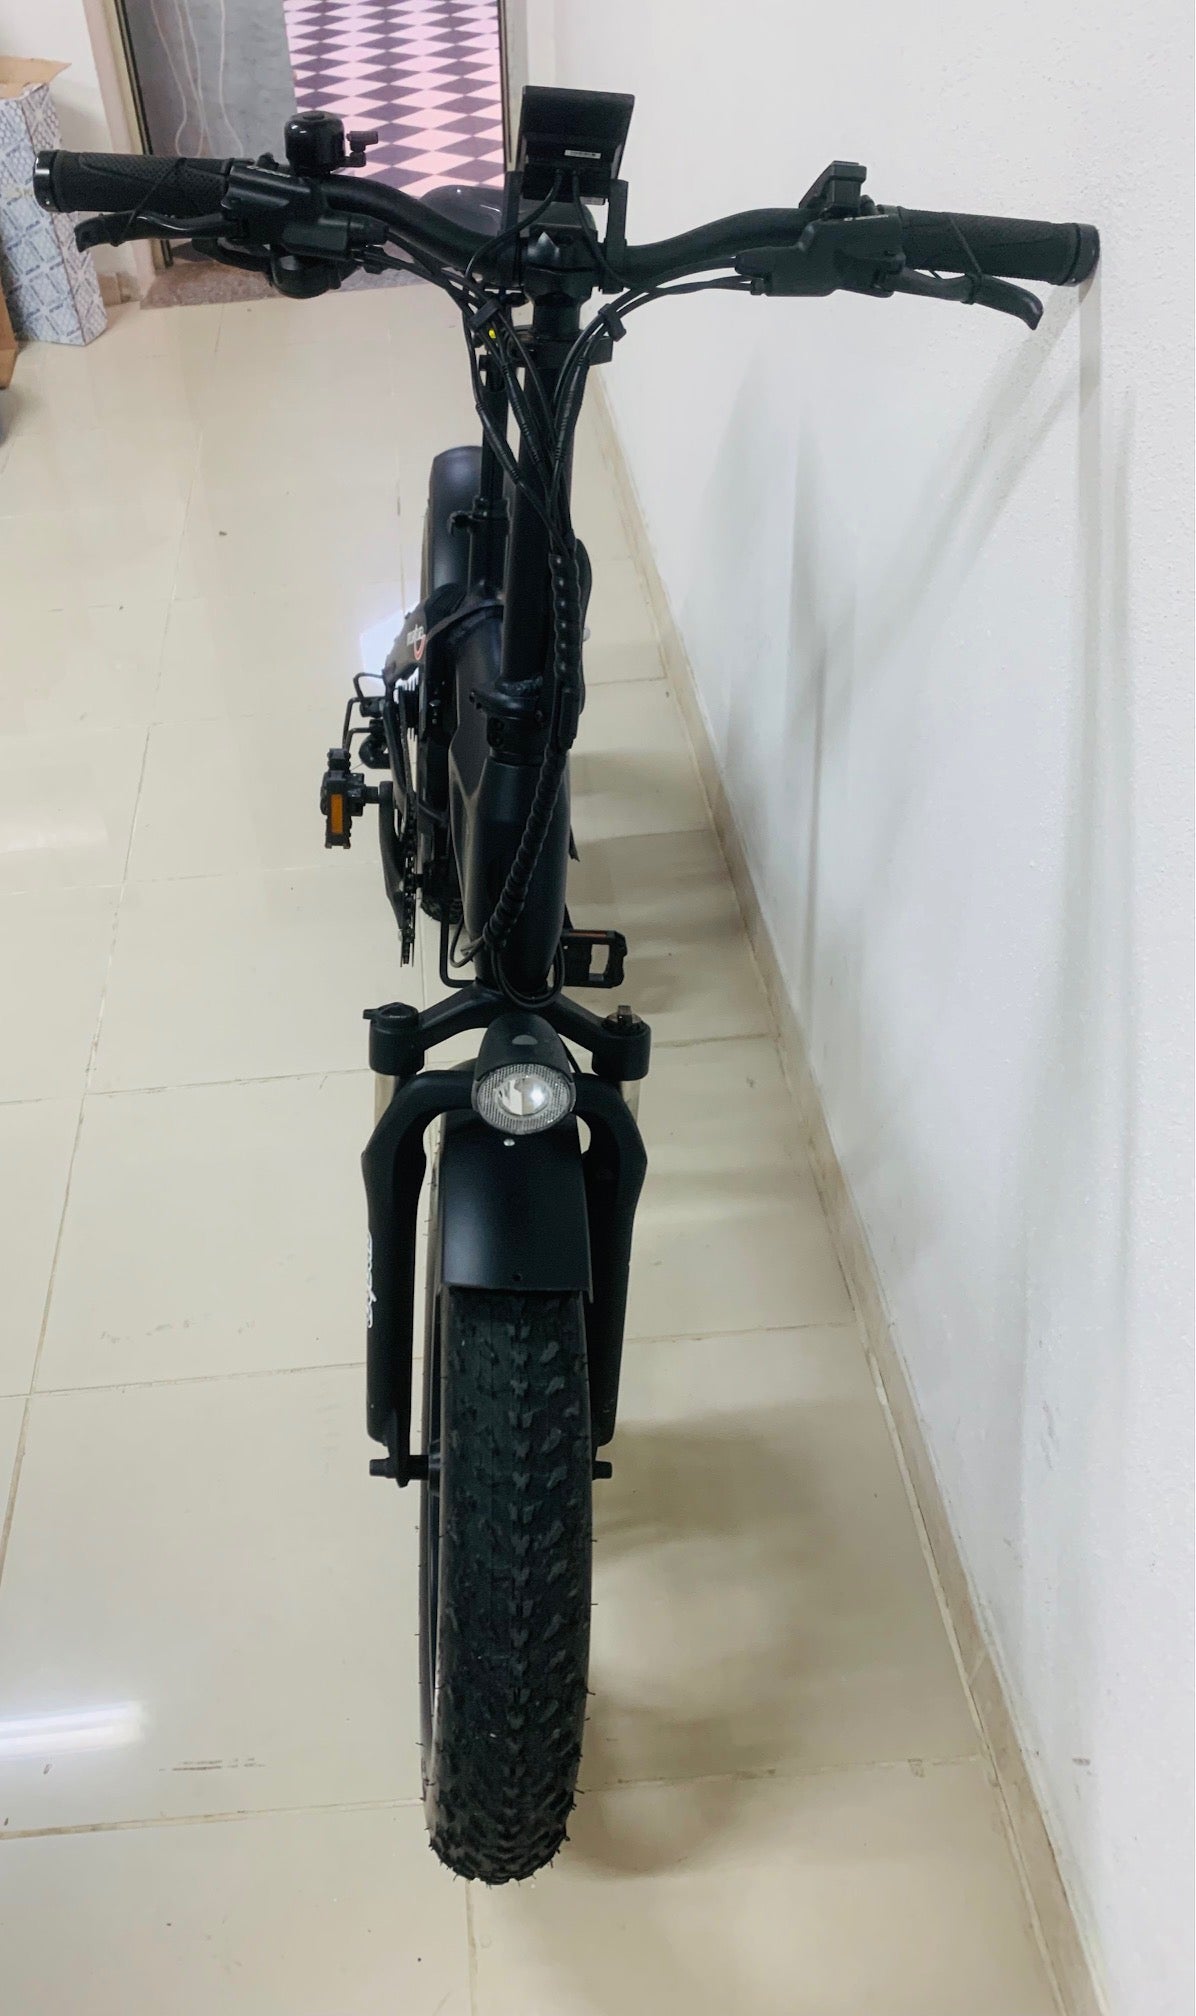 bici pedalata assistita i-con x7 black fat